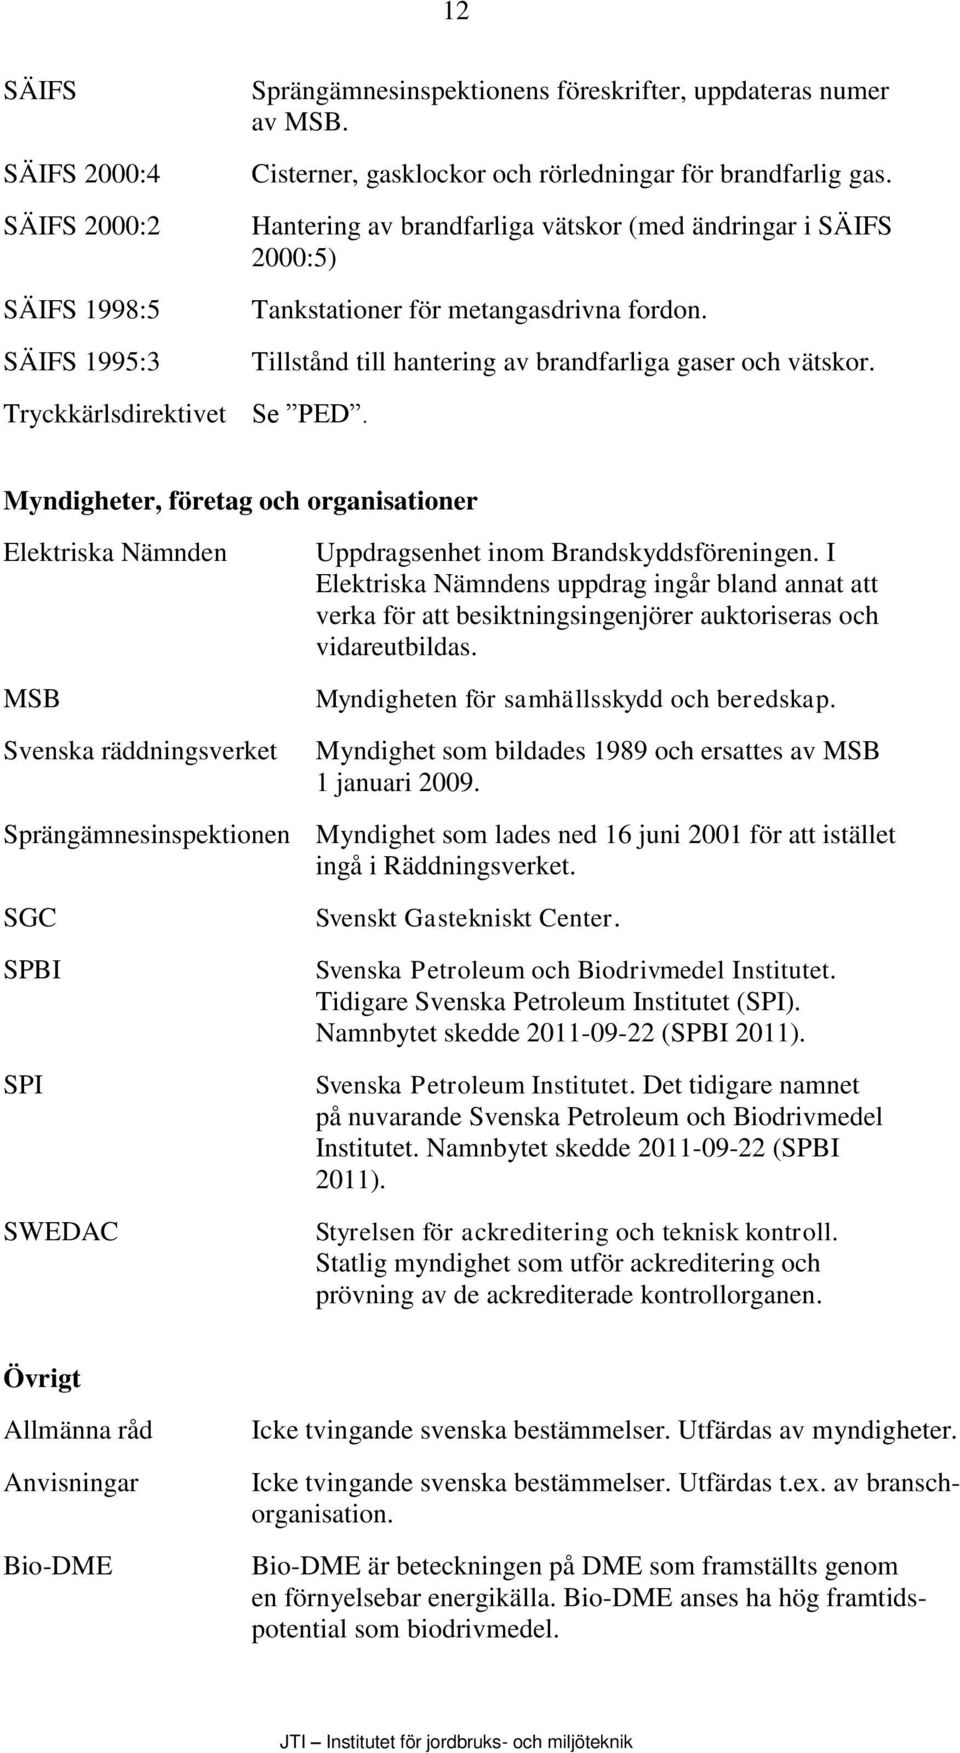 Myndigheter, företag och organisationer Elektriska Nämnden MSB Svenska räddningsverket Uppdragsenhet inom Brandskyddsföreningen.